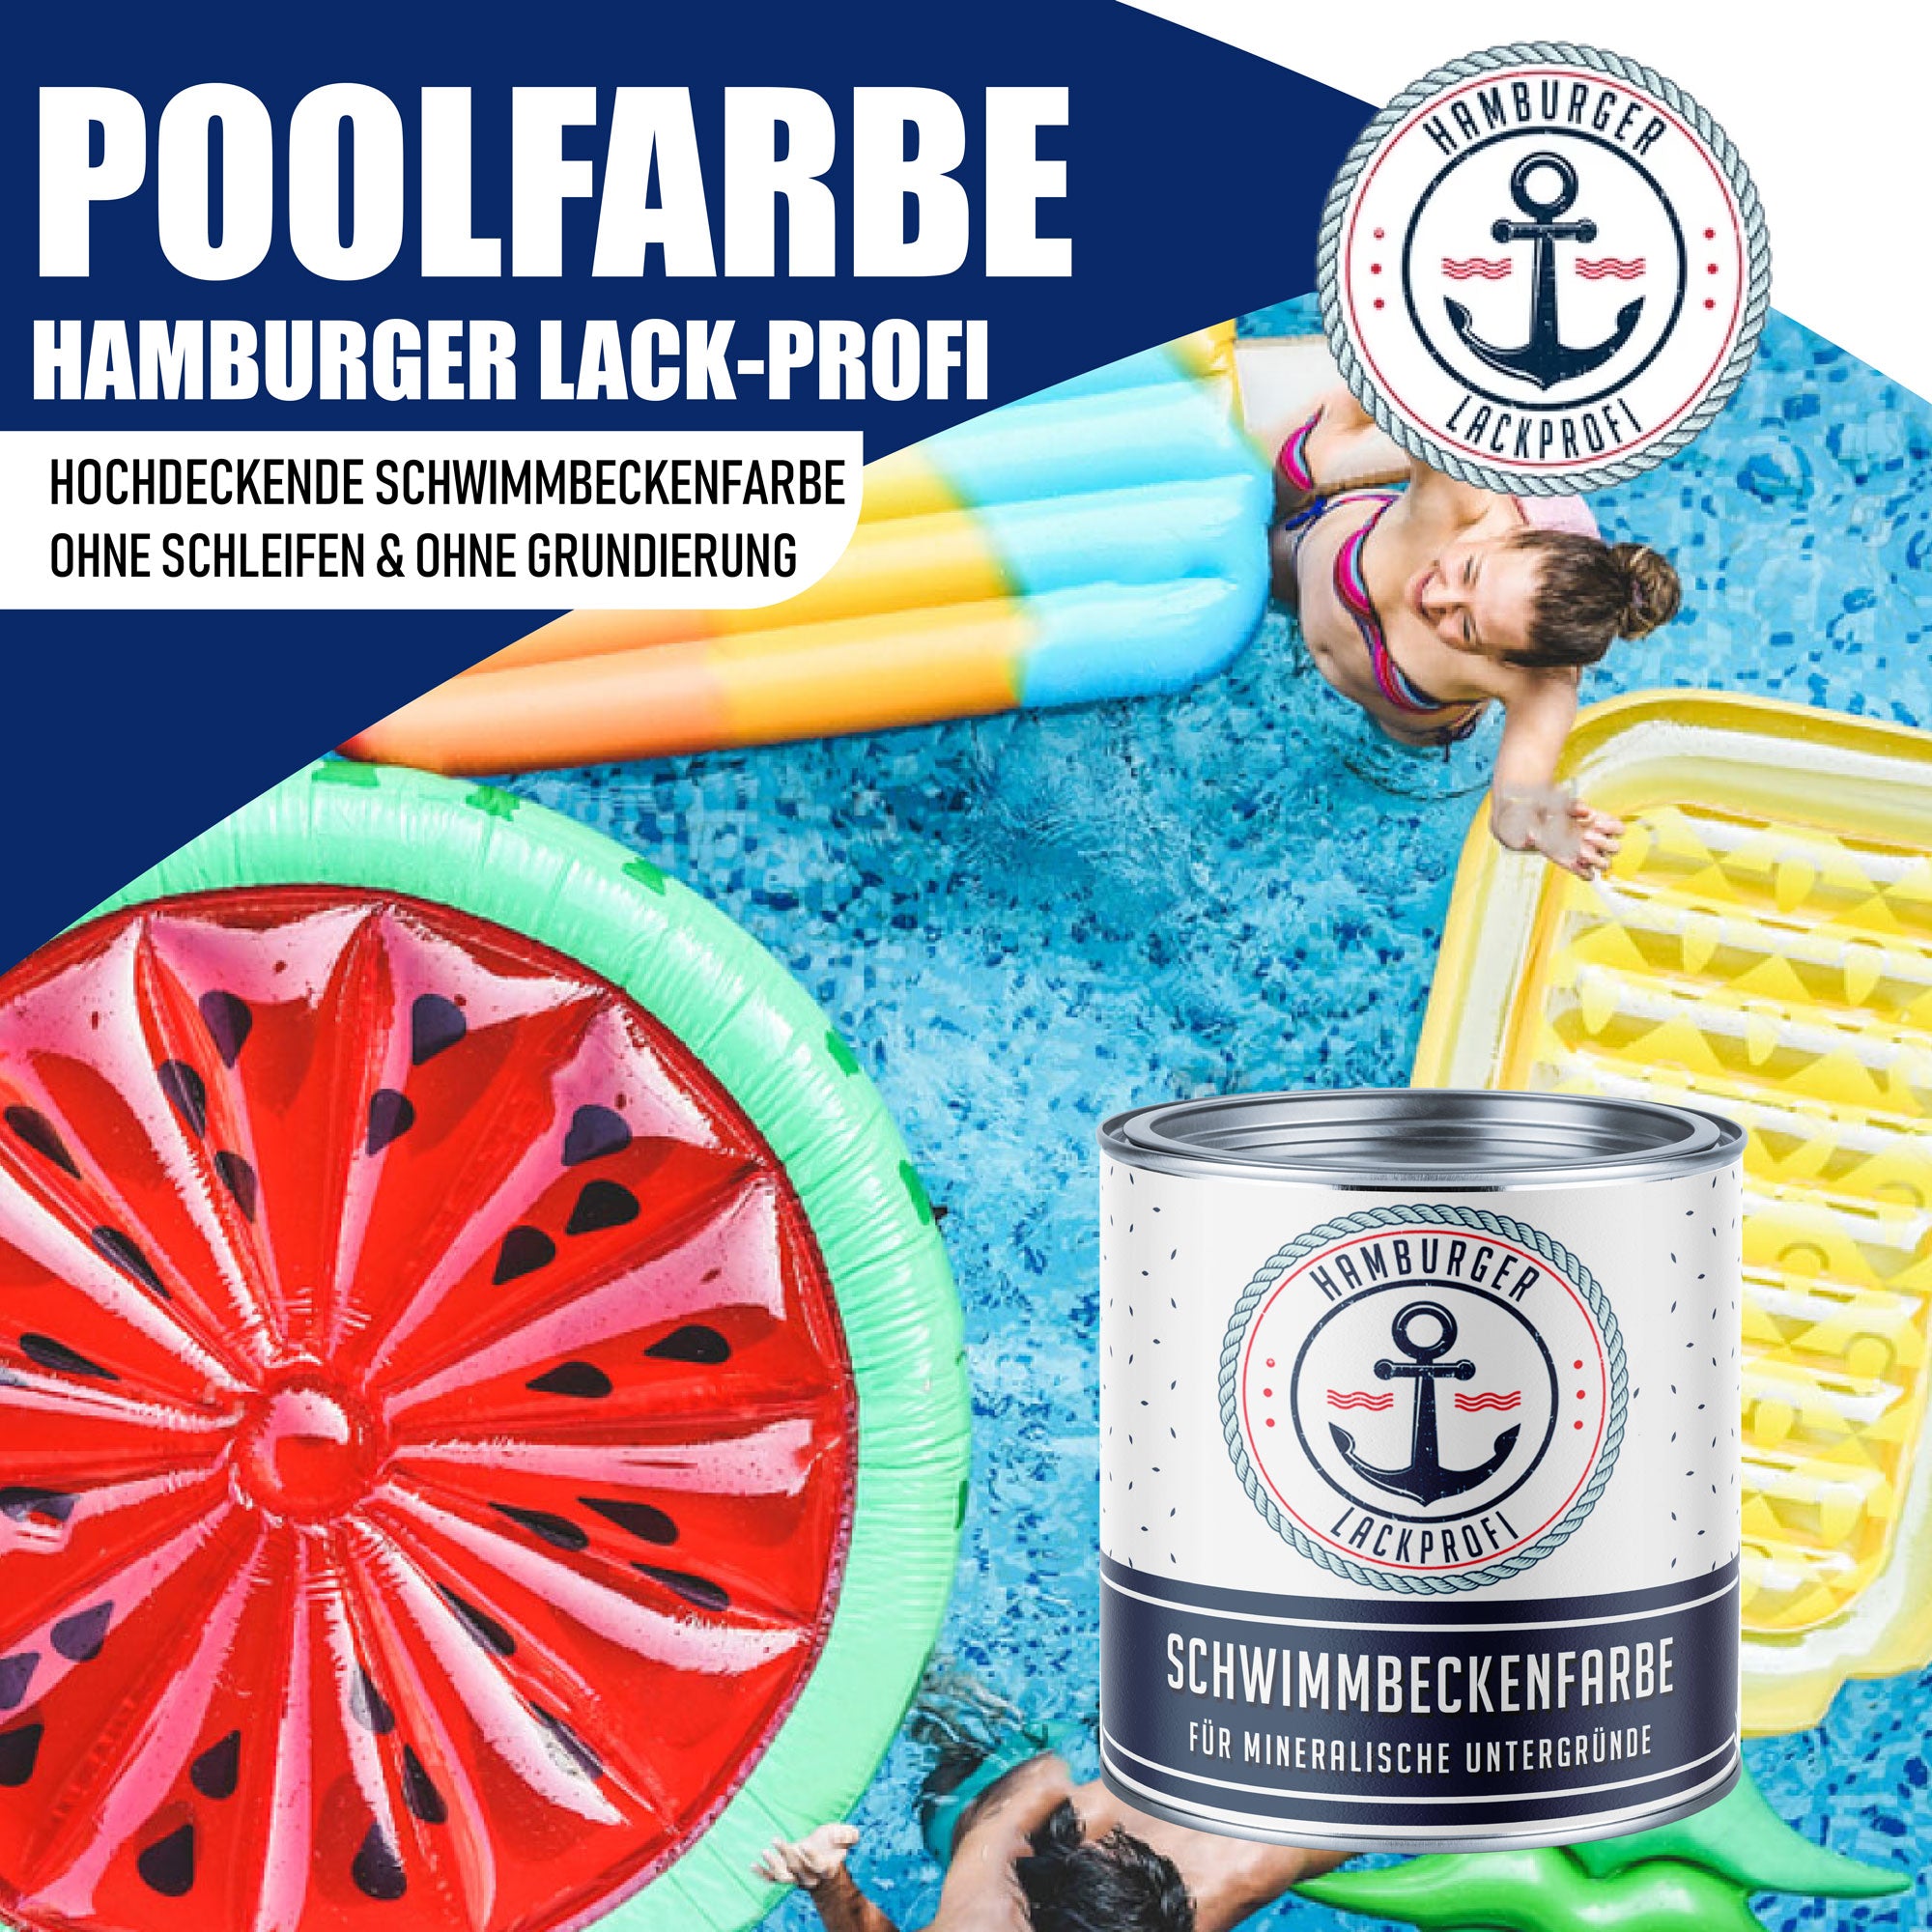 Hamburger Lack-Profi Schwimmbeckenfarbe Pastellorange RAL 2003 - hochdeckende Poolfarbe